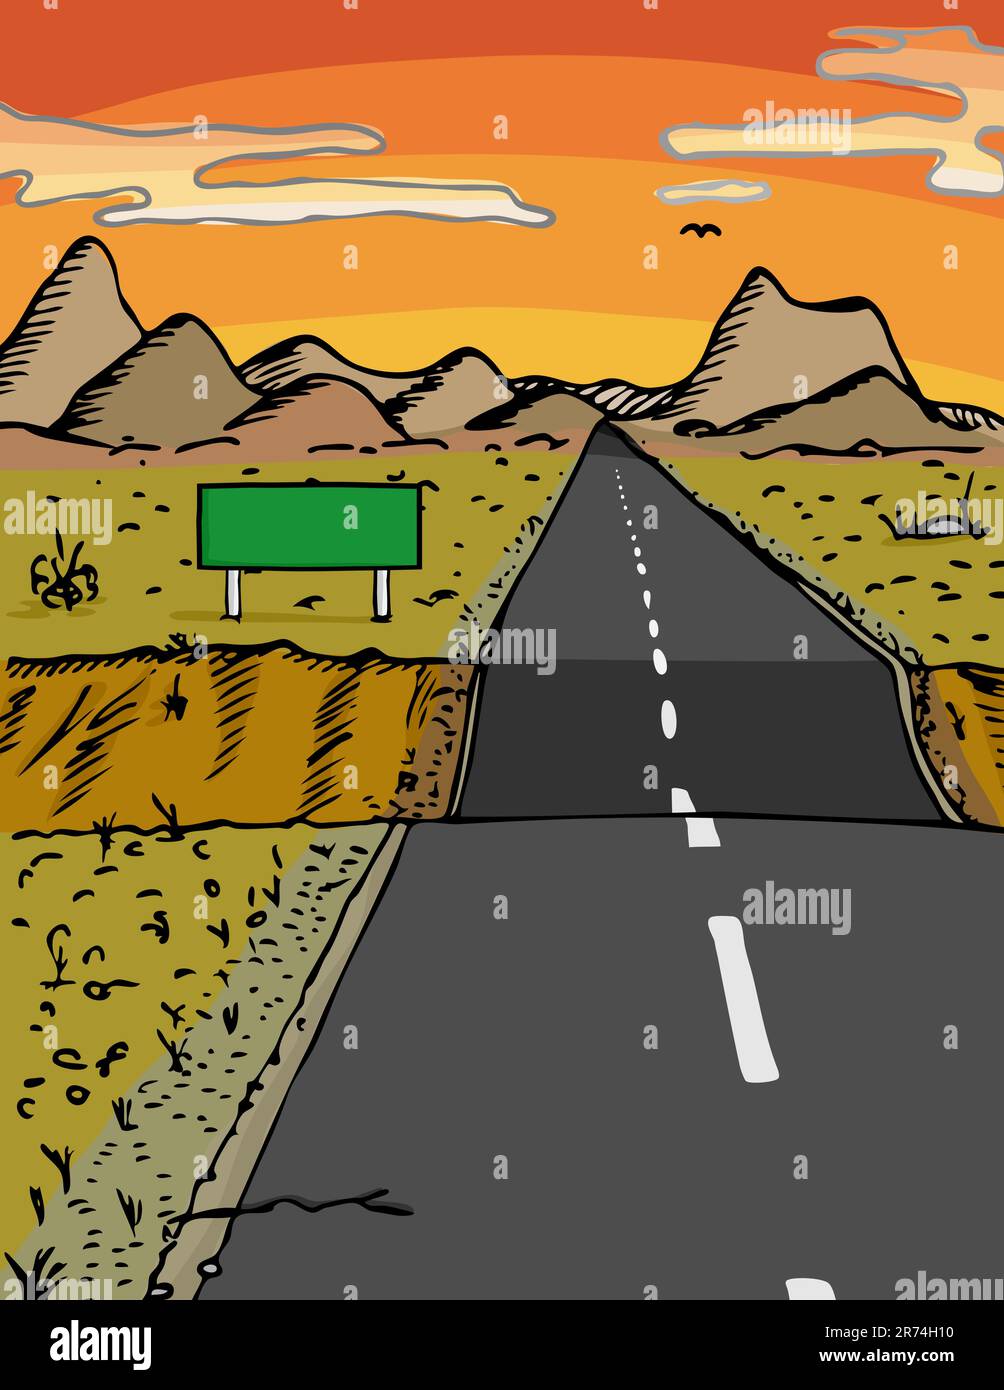 Route avec trempette et panneau vierge dans une zone désertique pendant le coucher du soleil Illustration de Vecteur